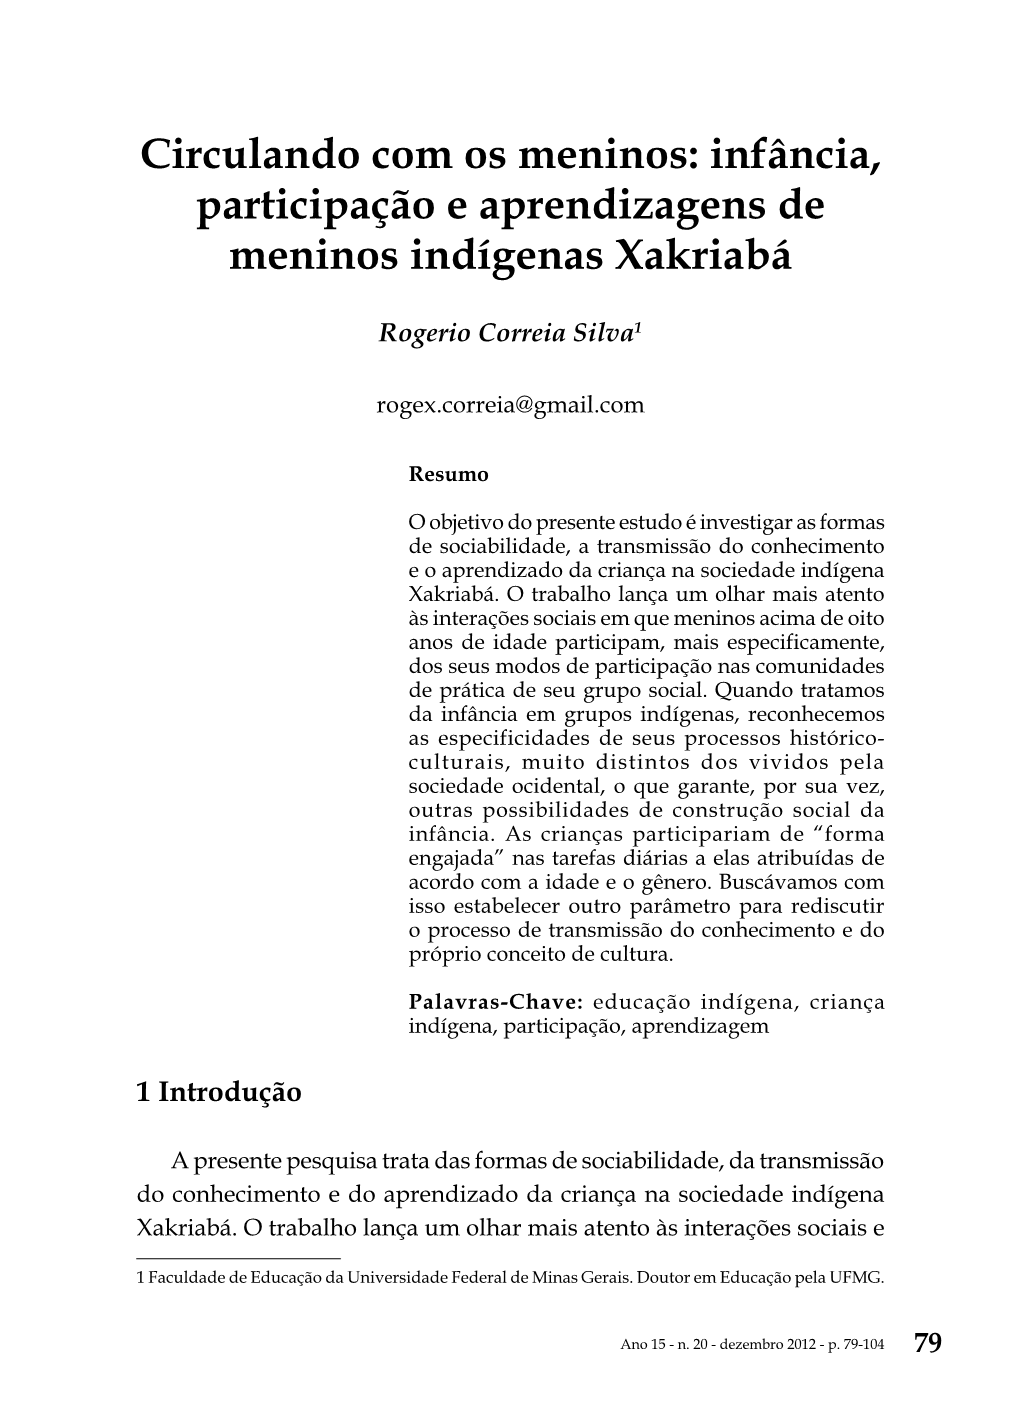 Circulando Com Os Meninos: Infância, Participação E Aprendizagens De Meninos Indígenas Xakriabá